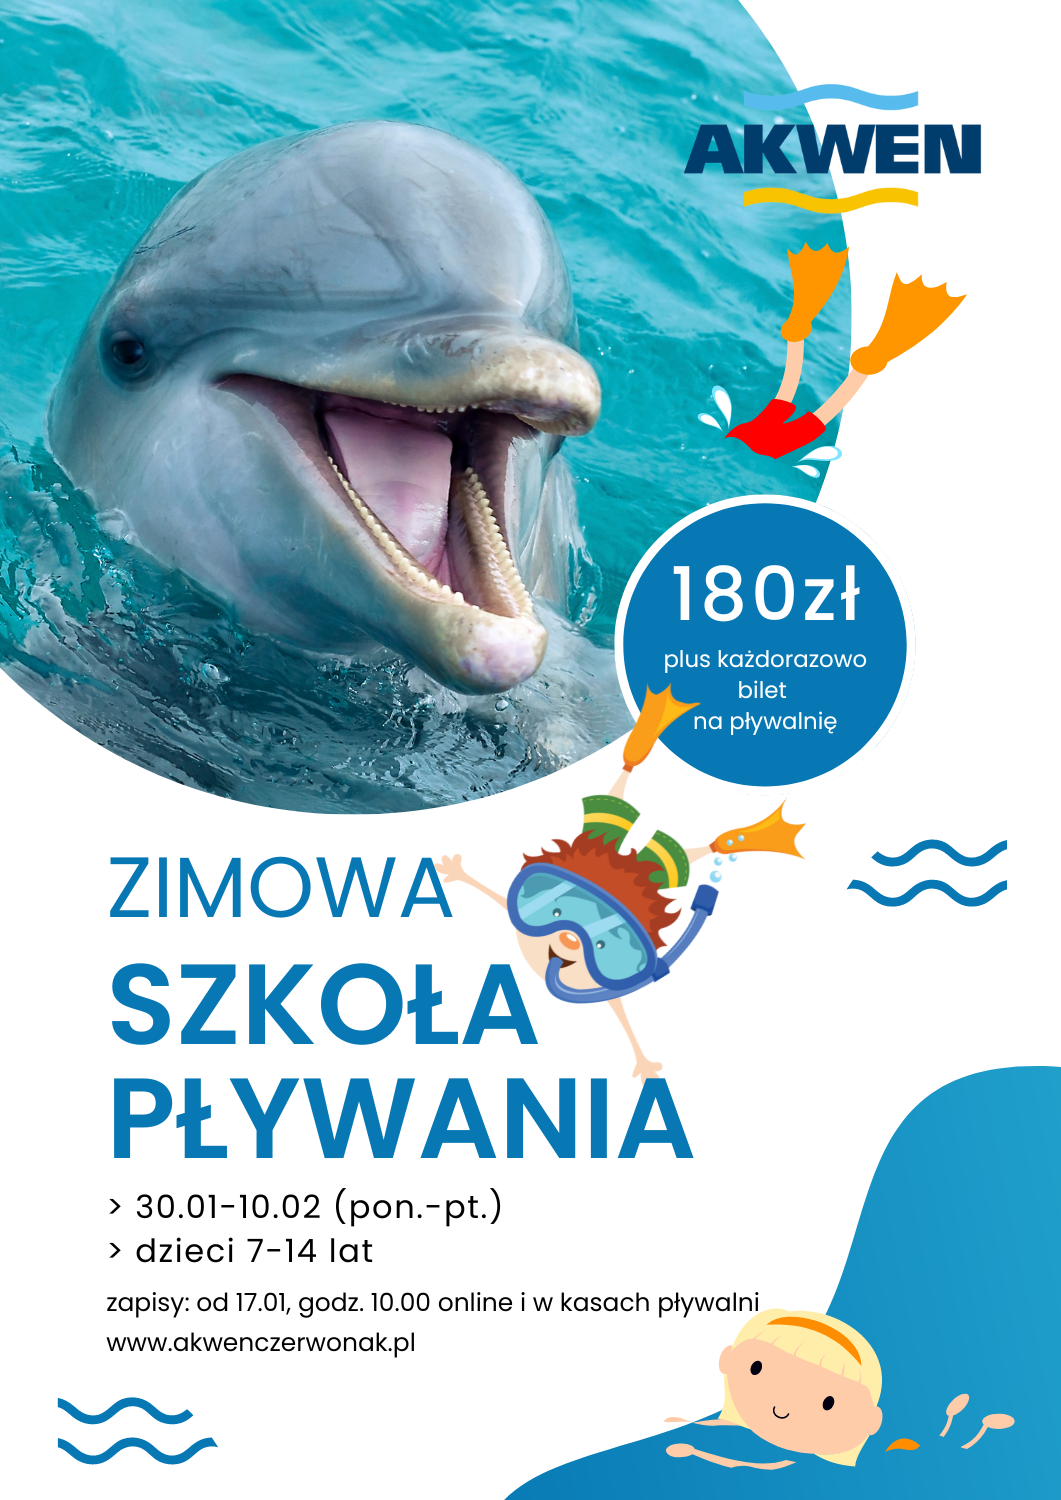 Grafika z nazwą wydarzenia: Zimowa Szkoła Pływania i podstawowymi informacjami z wpisu plus zdjęcie delfina i rysunki  pływających dzieci 